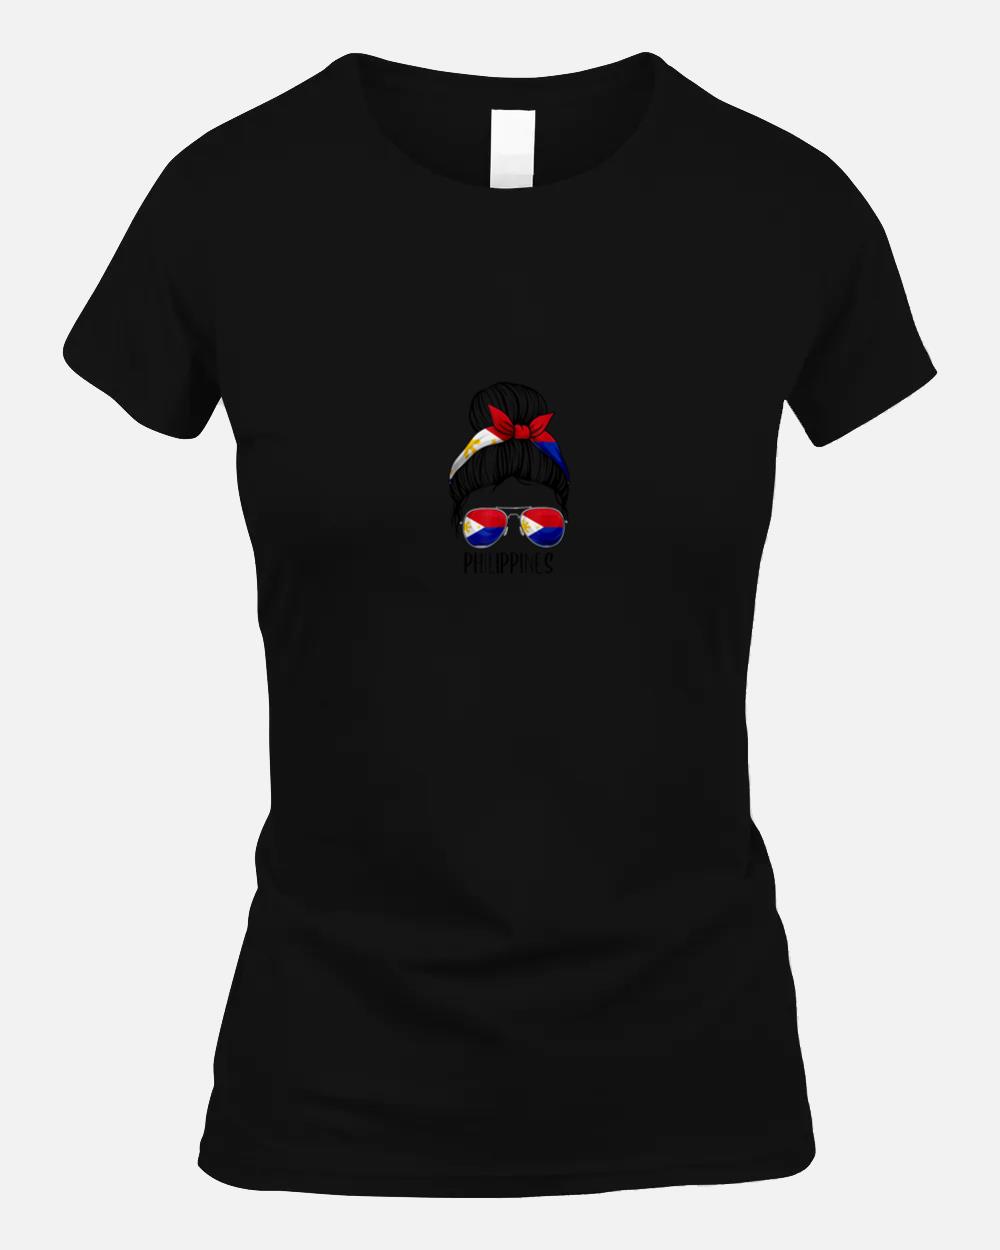 Philippines Shirt For Girls Women, Messy Bun Filipino Flag Unisex T-Shirt